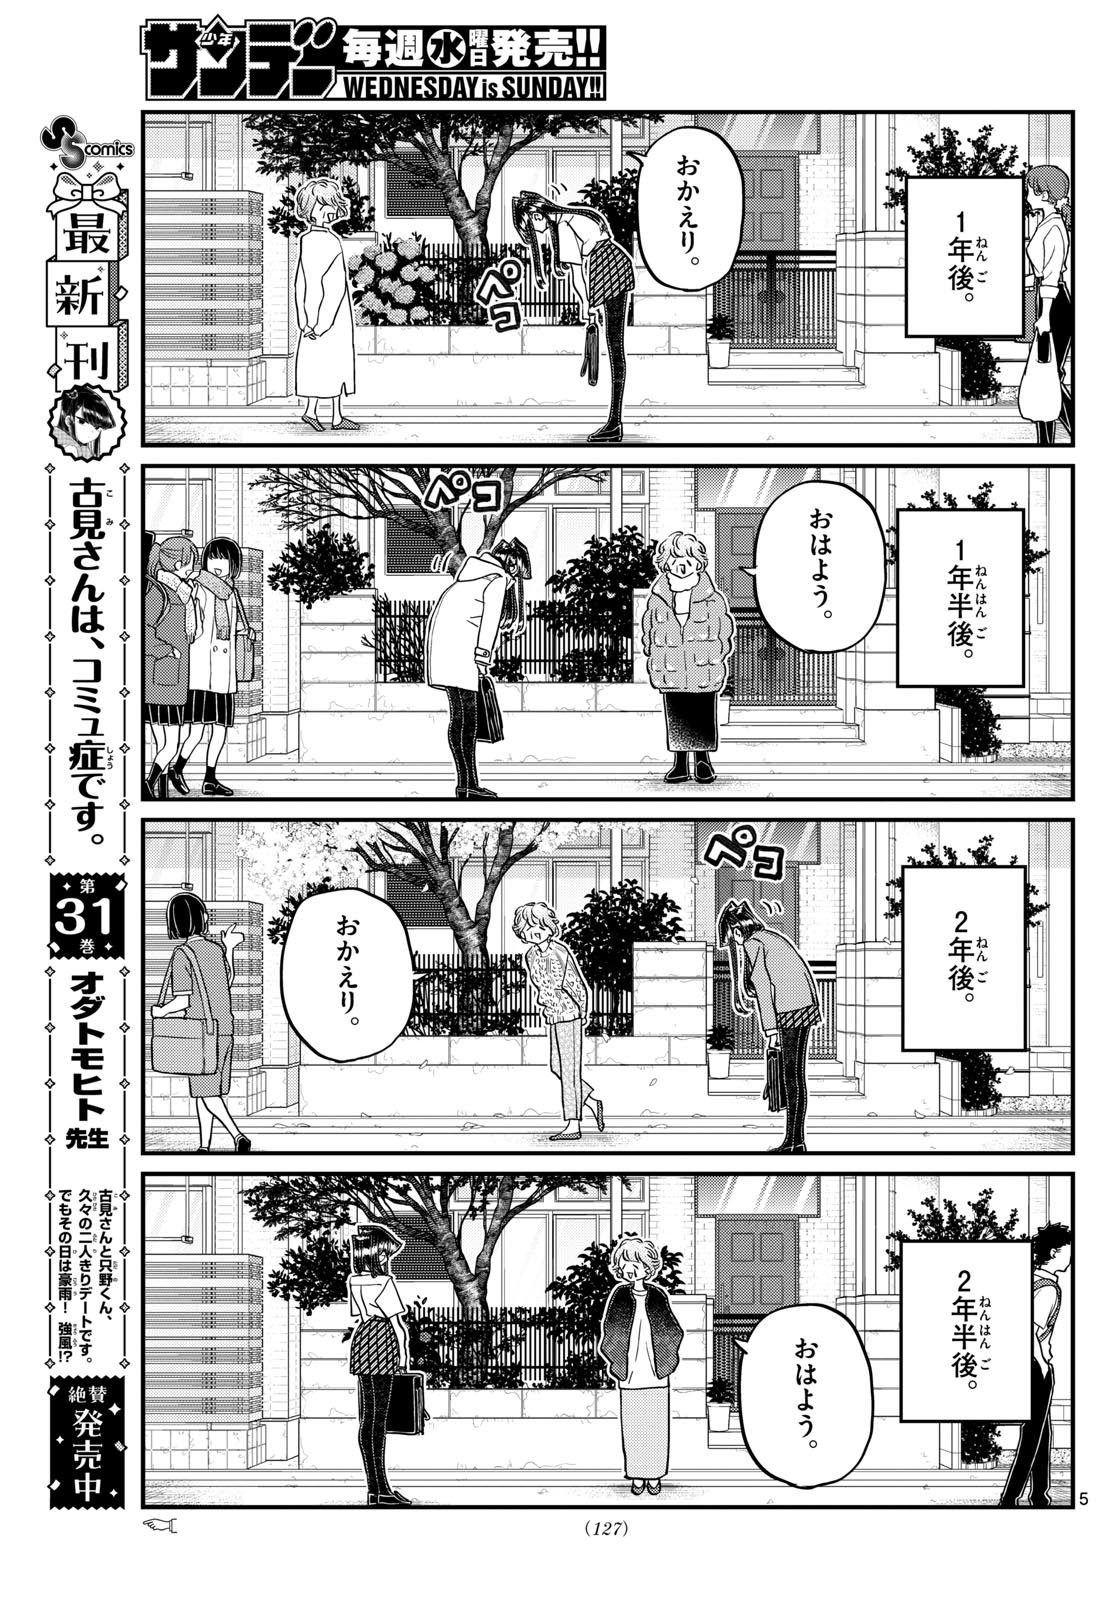 Read Komi-san wa Komyushou Desu 431 - Oni Scan